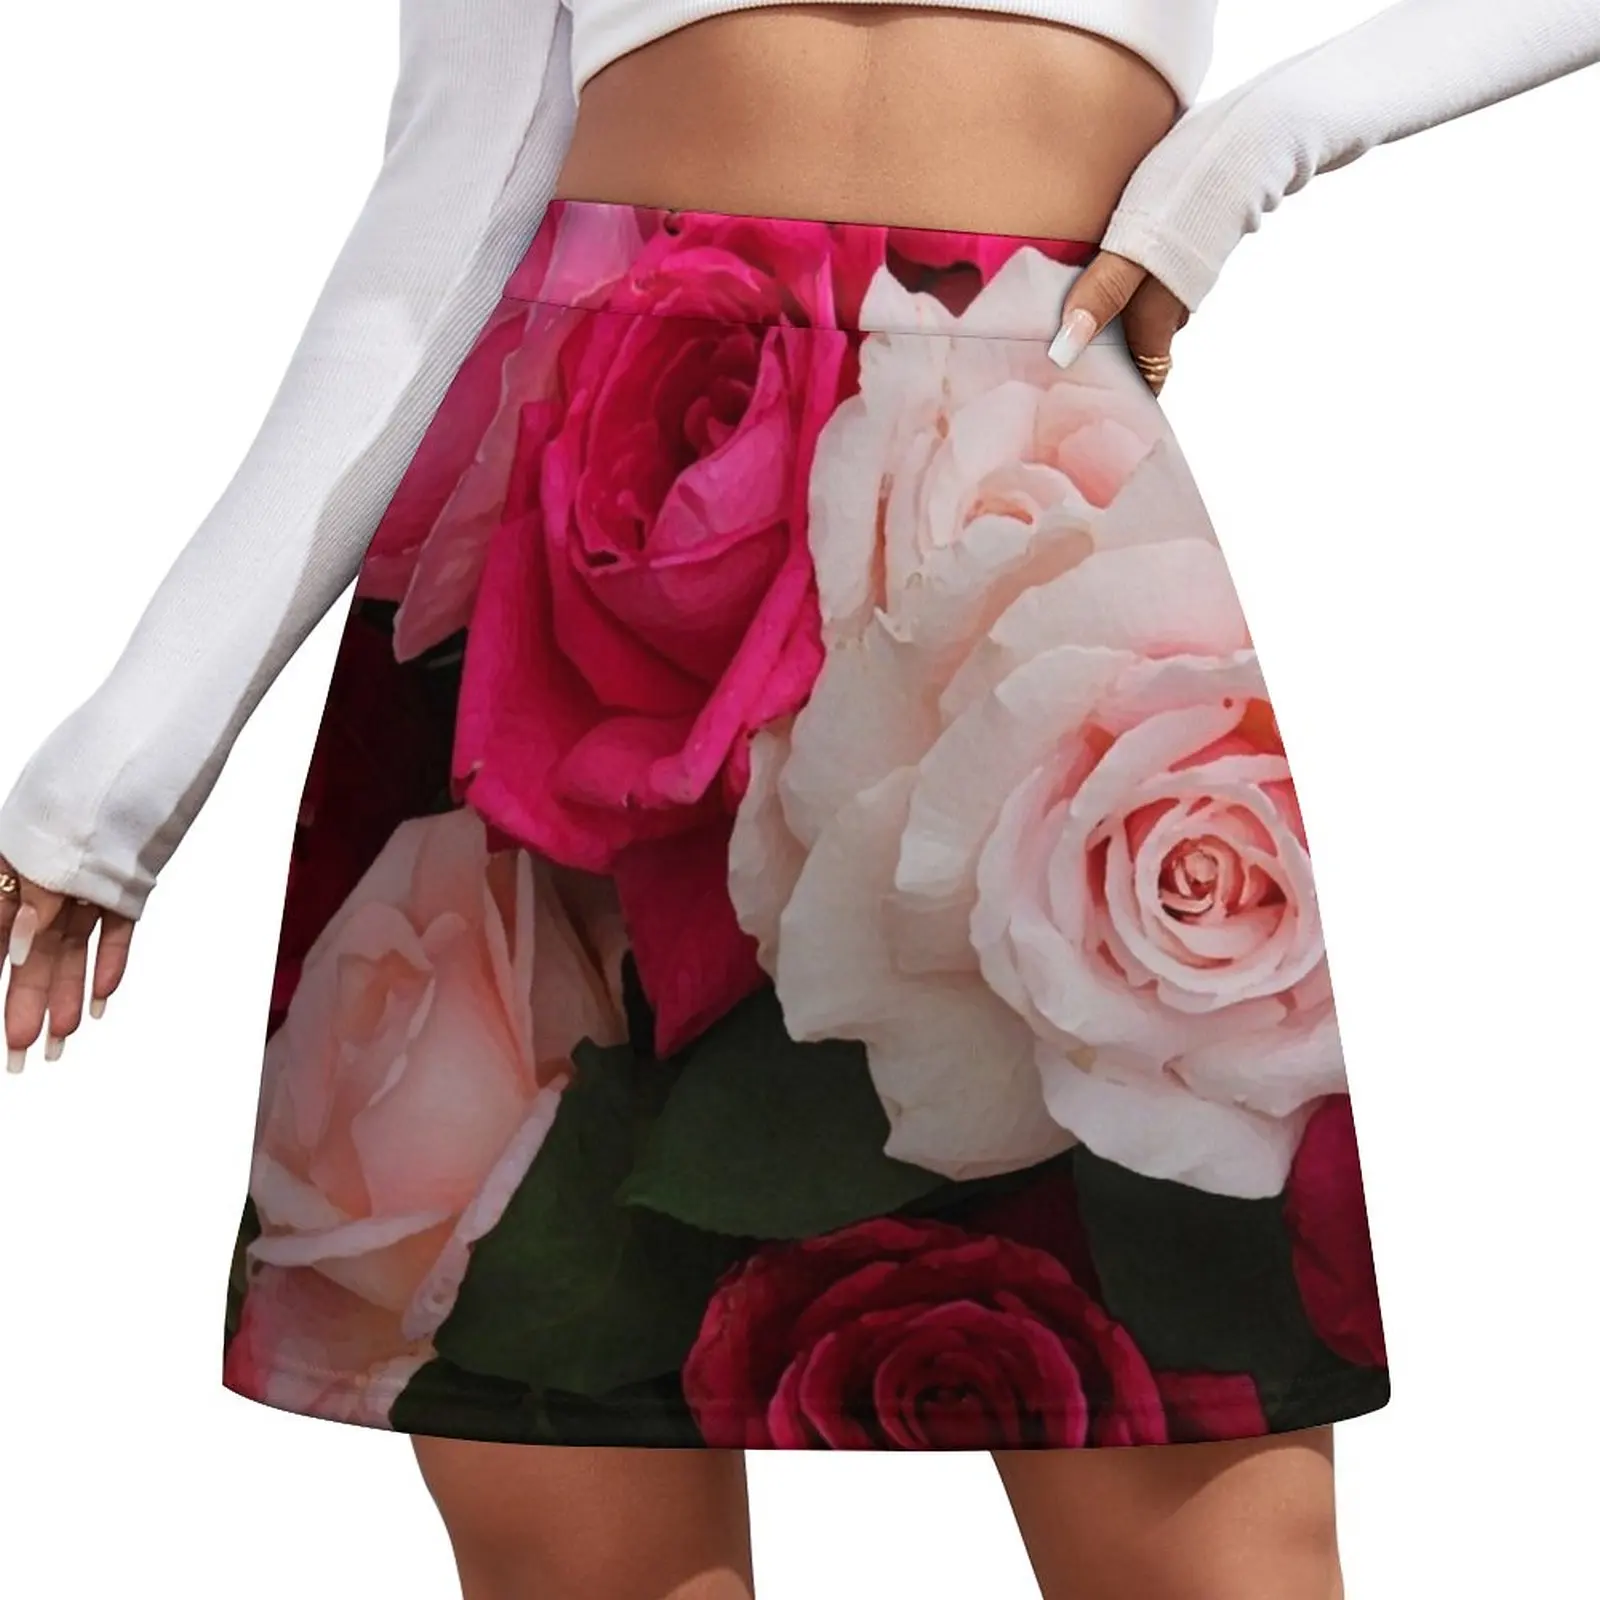 Floral Mini Skirt Skirt satin new in dresses japanese kawaii clothes midi skirt for women